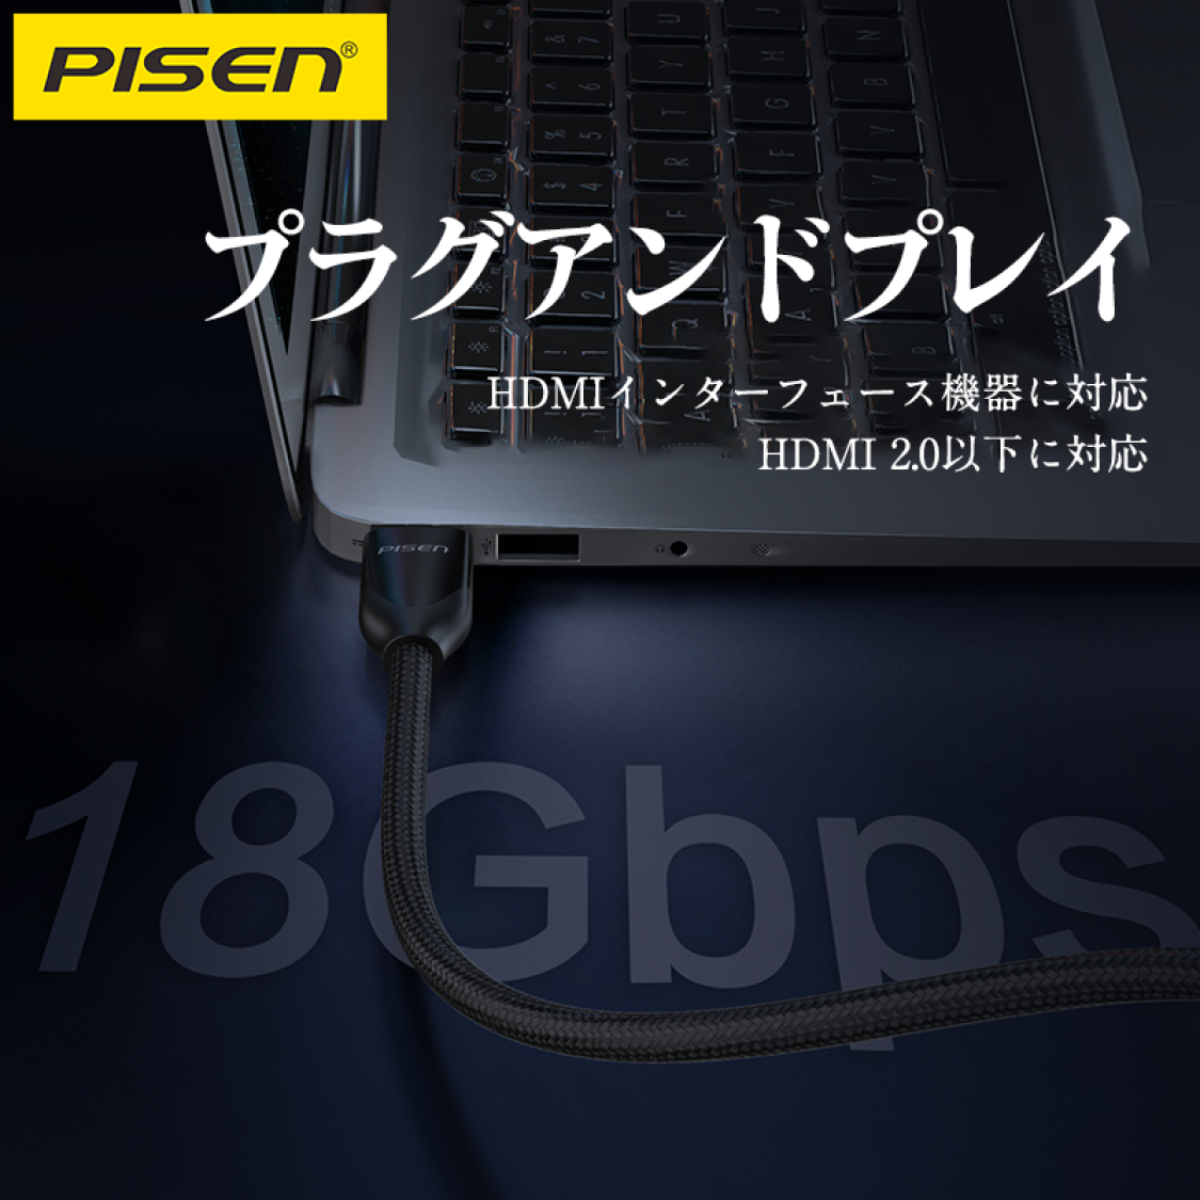 「新品初発売」 Pisen HDMI 2.0 編組高品位ケーブル 亜鉛合金製|undefined